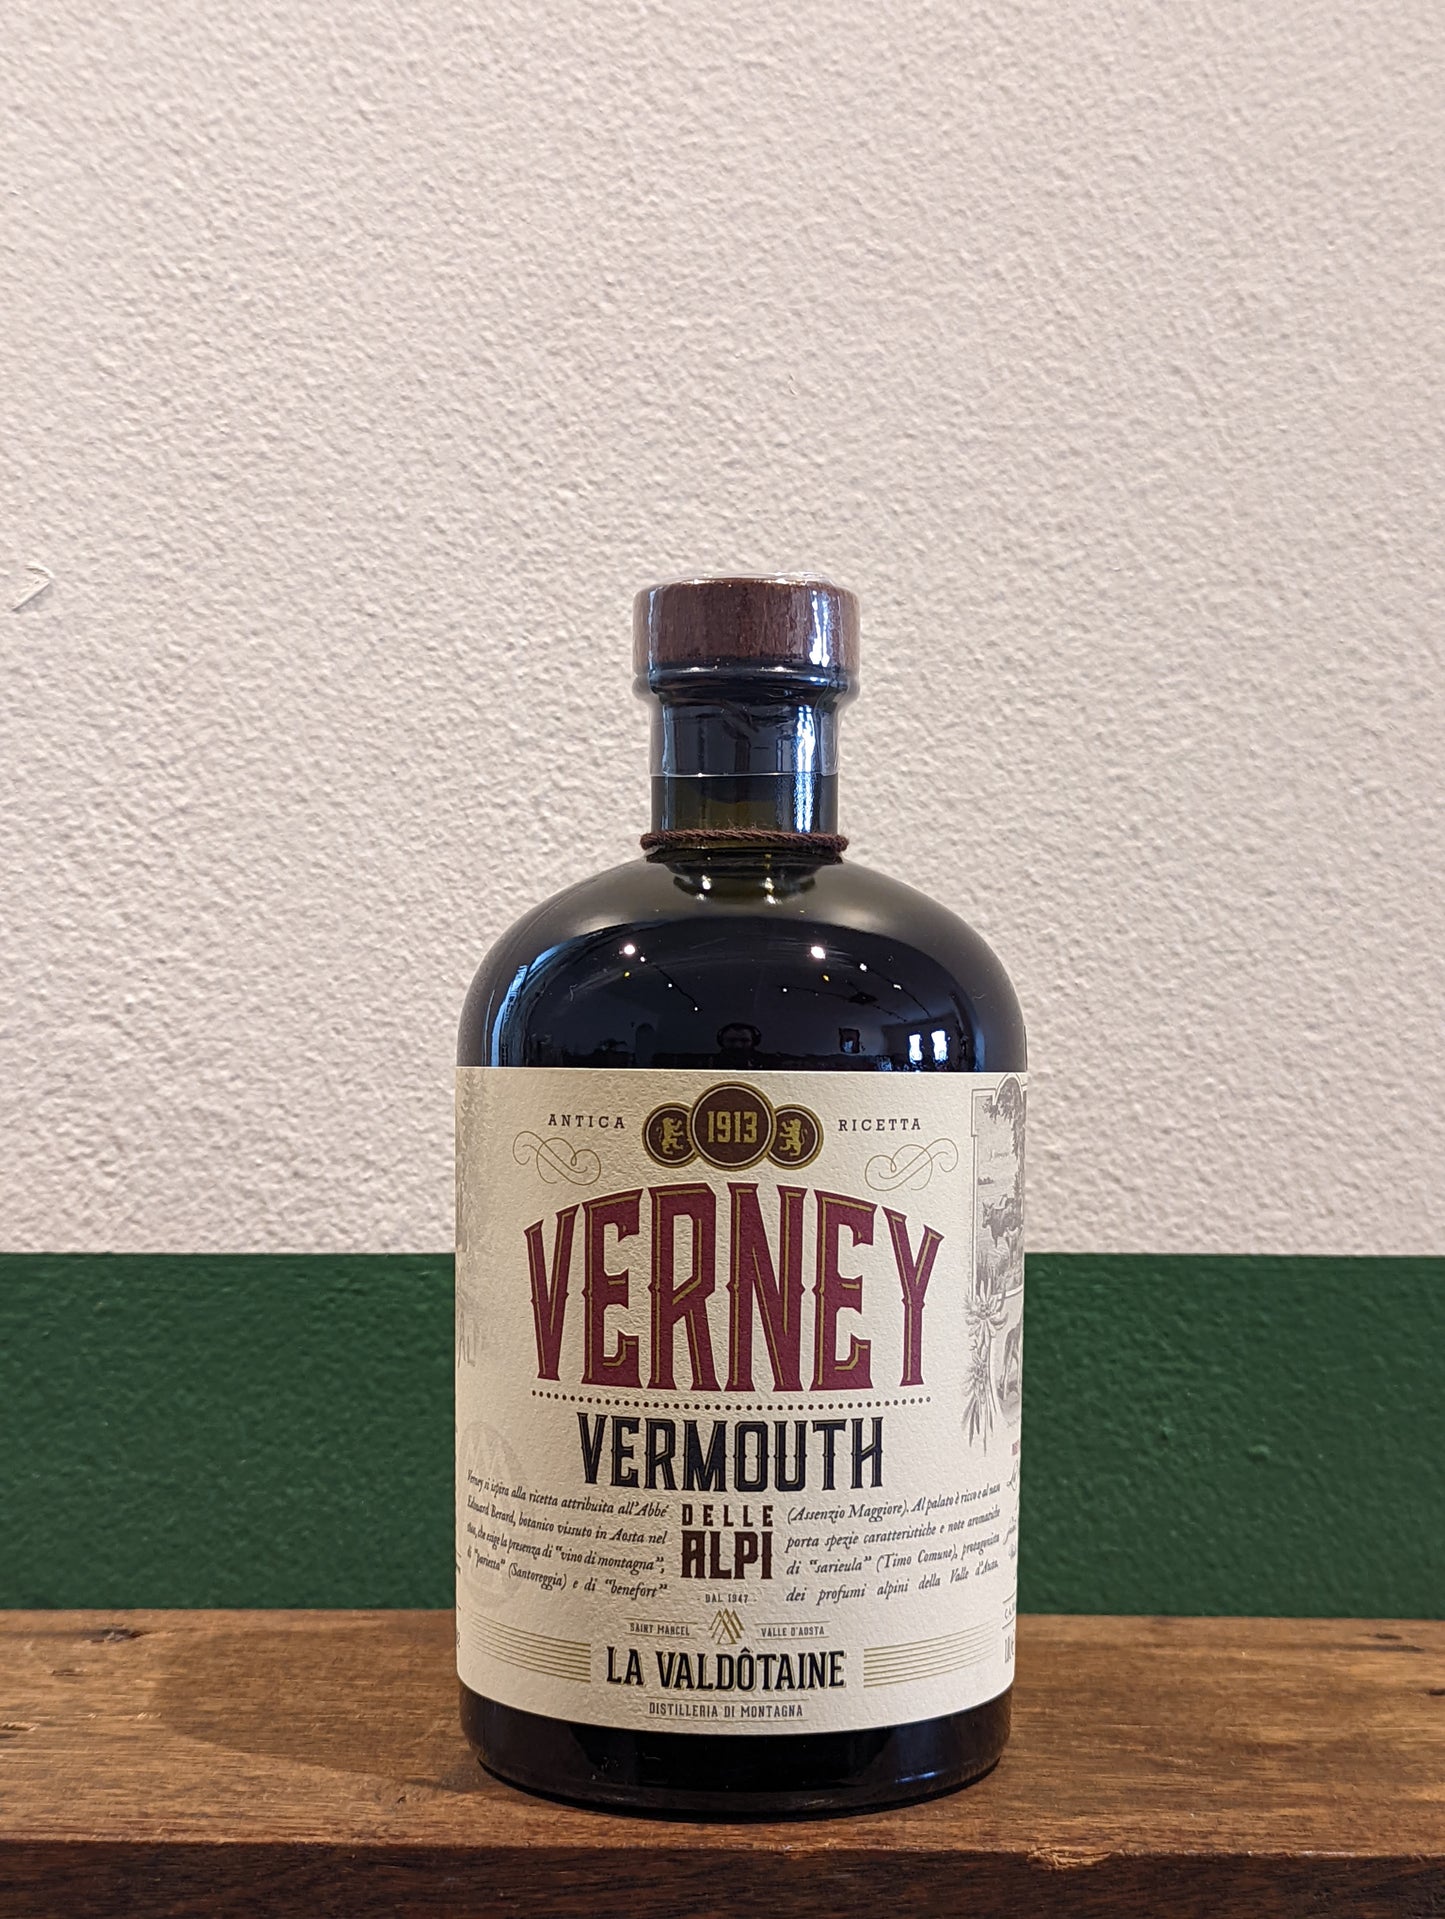 La Valdotaine - Verney Vermouth